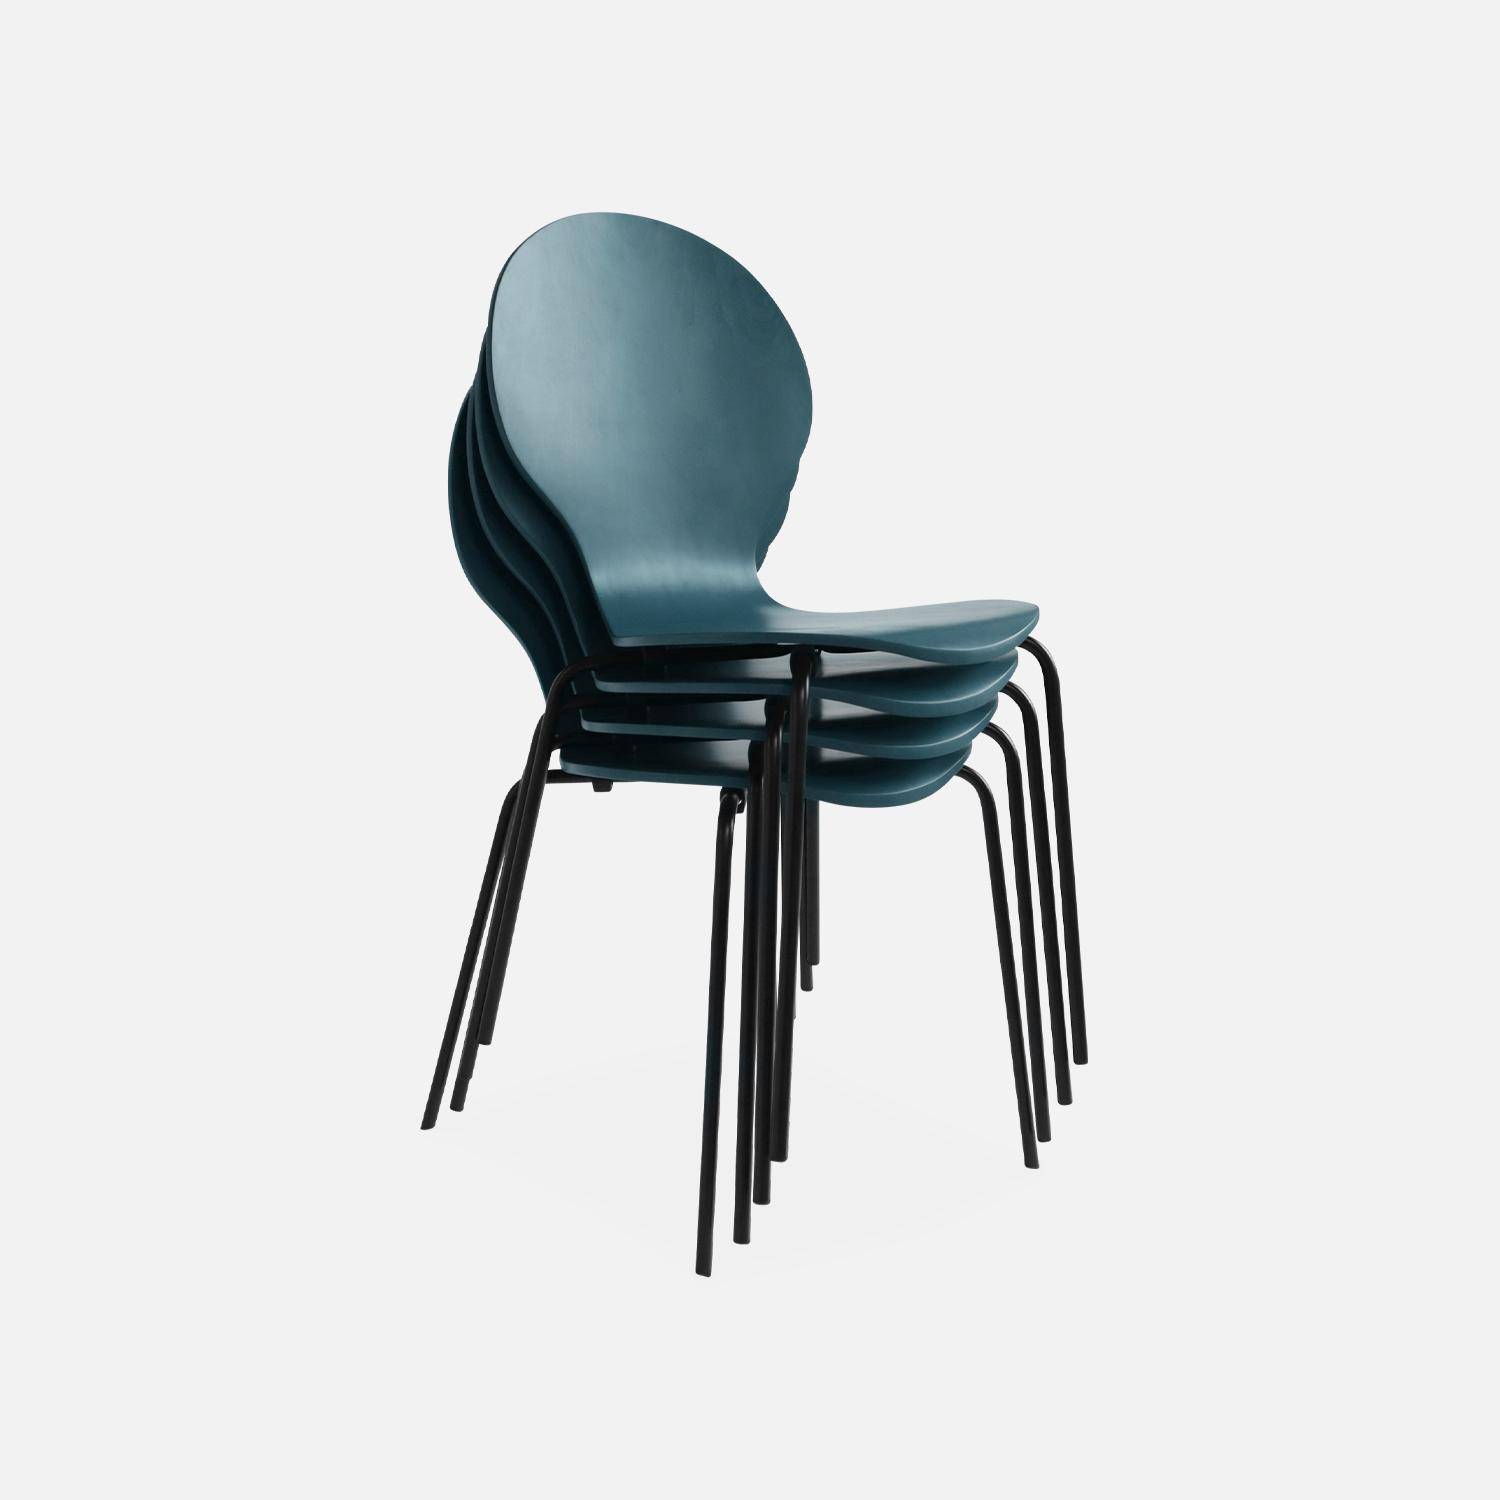 4er Set stapelbare Retro-Stühle in blau, Hevea-Holz und Sperrholz, Beine aus Stahl, Naomi, B 43 x T 48 x H 87cm Photo6